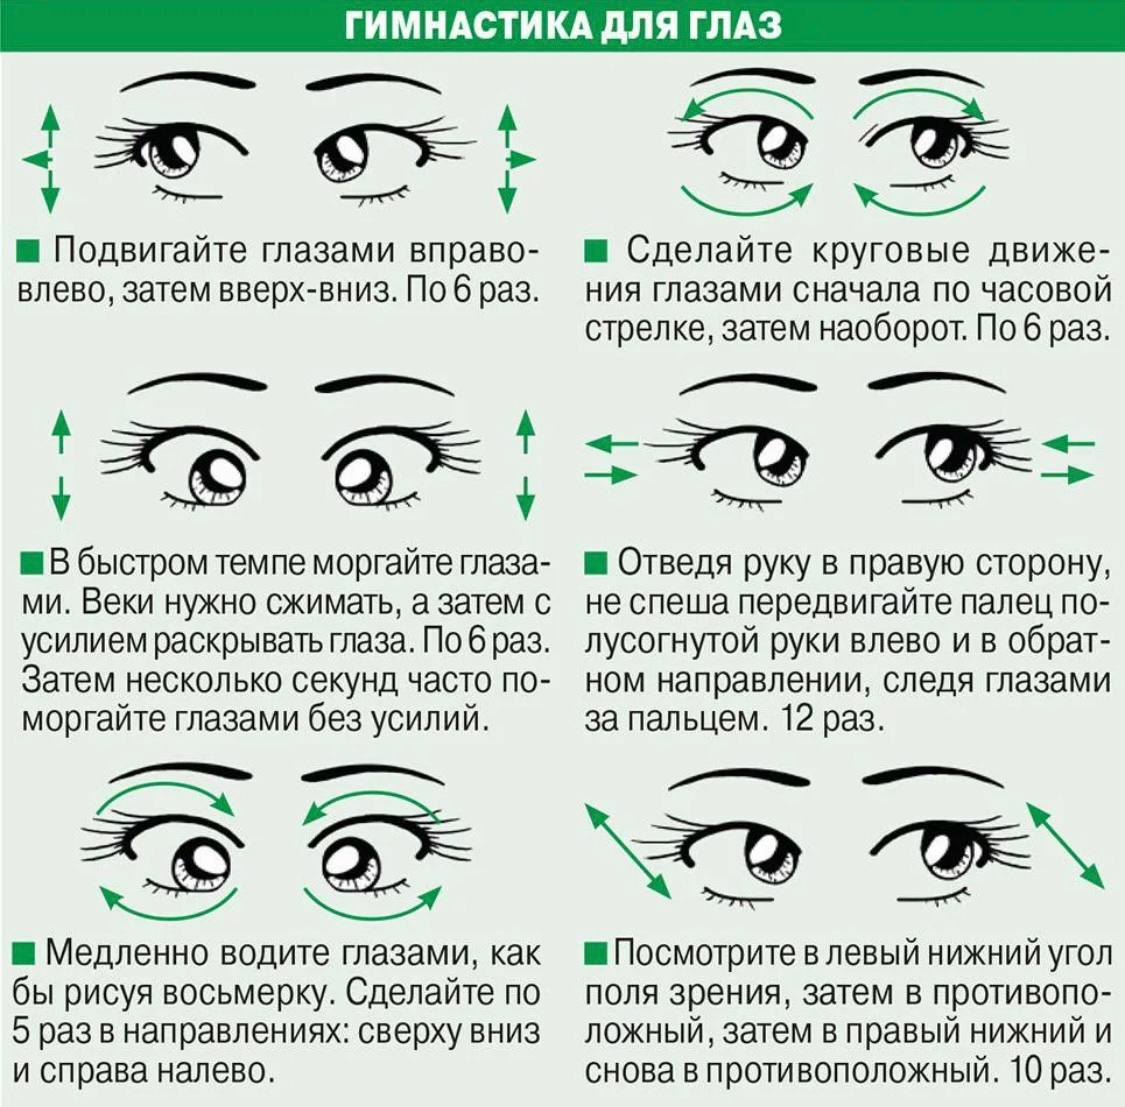 100 восстановить зрение. Гимнастика для глаз для улучшения зрения комплекс упражнений. Упражнения для глаз для улучшения зрения при близорукости. Упражнения для глаз для улучшения зрения при близорукости для детей. Комплекс упражнений для коррекции зрения 10 упражнений.